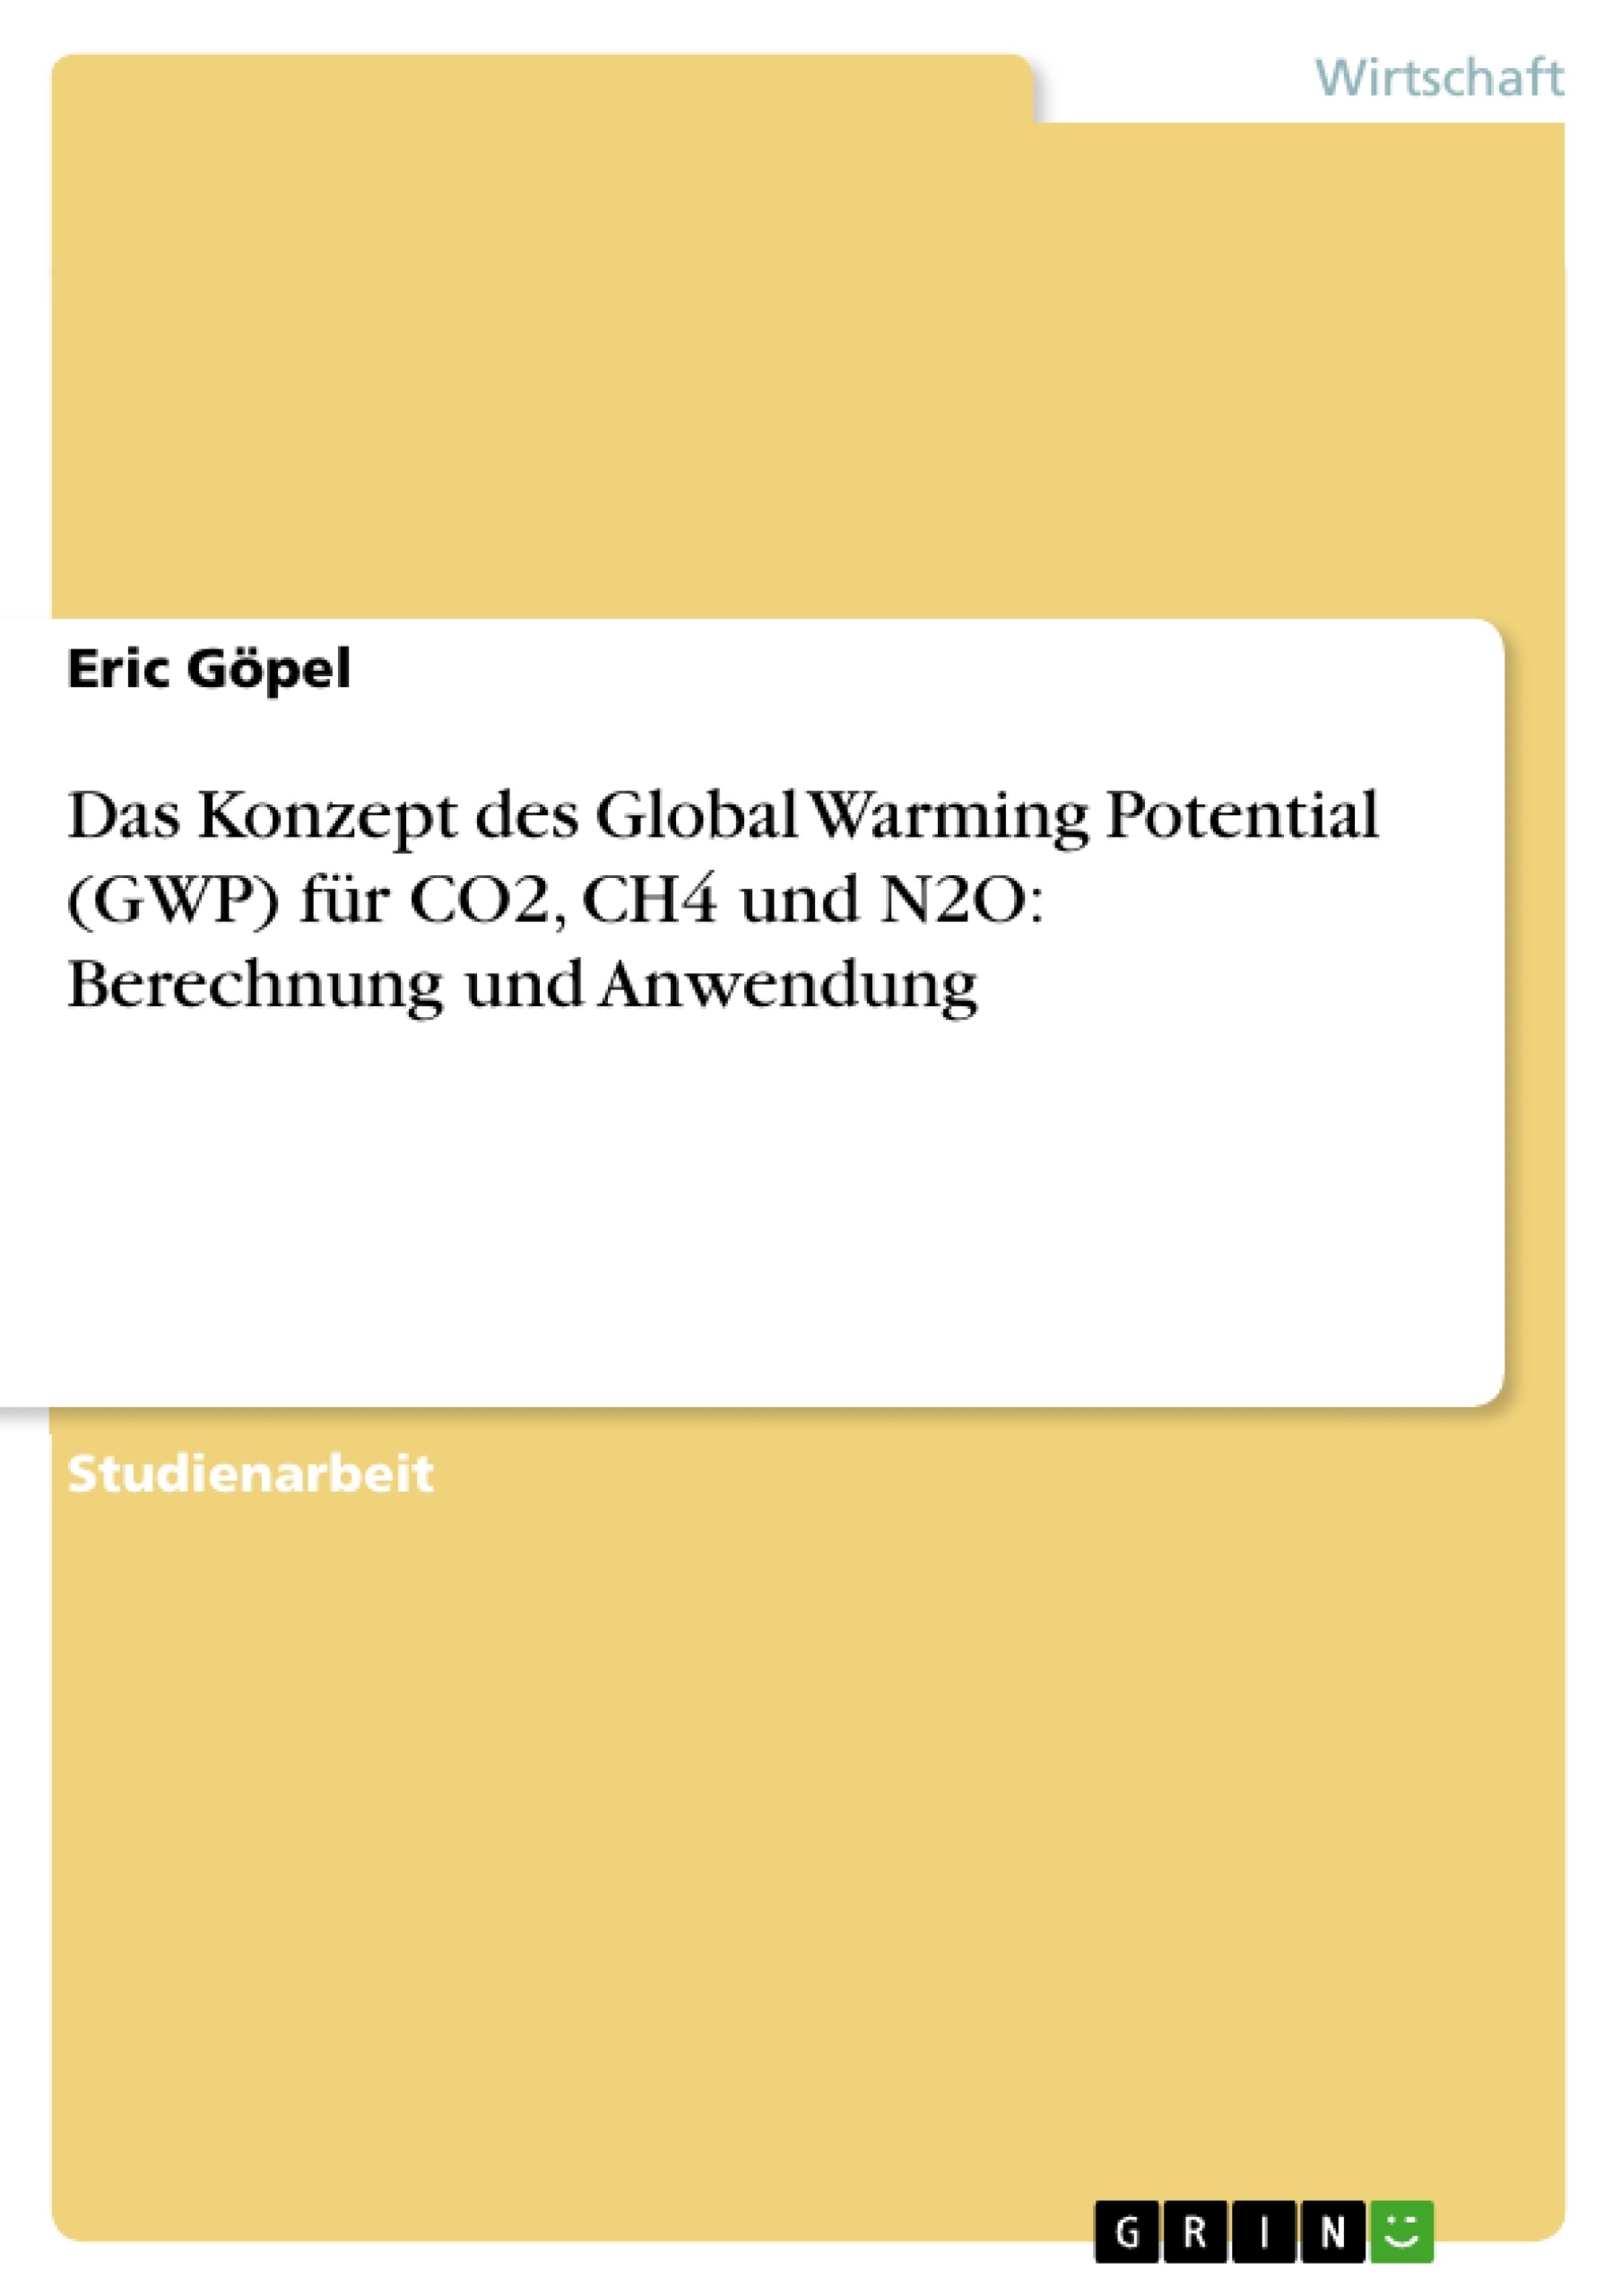 Titre: Das Konzept des Global Warming Potential (GWP) für CO2, CH4 und N2O: Berechnung und Anwendung